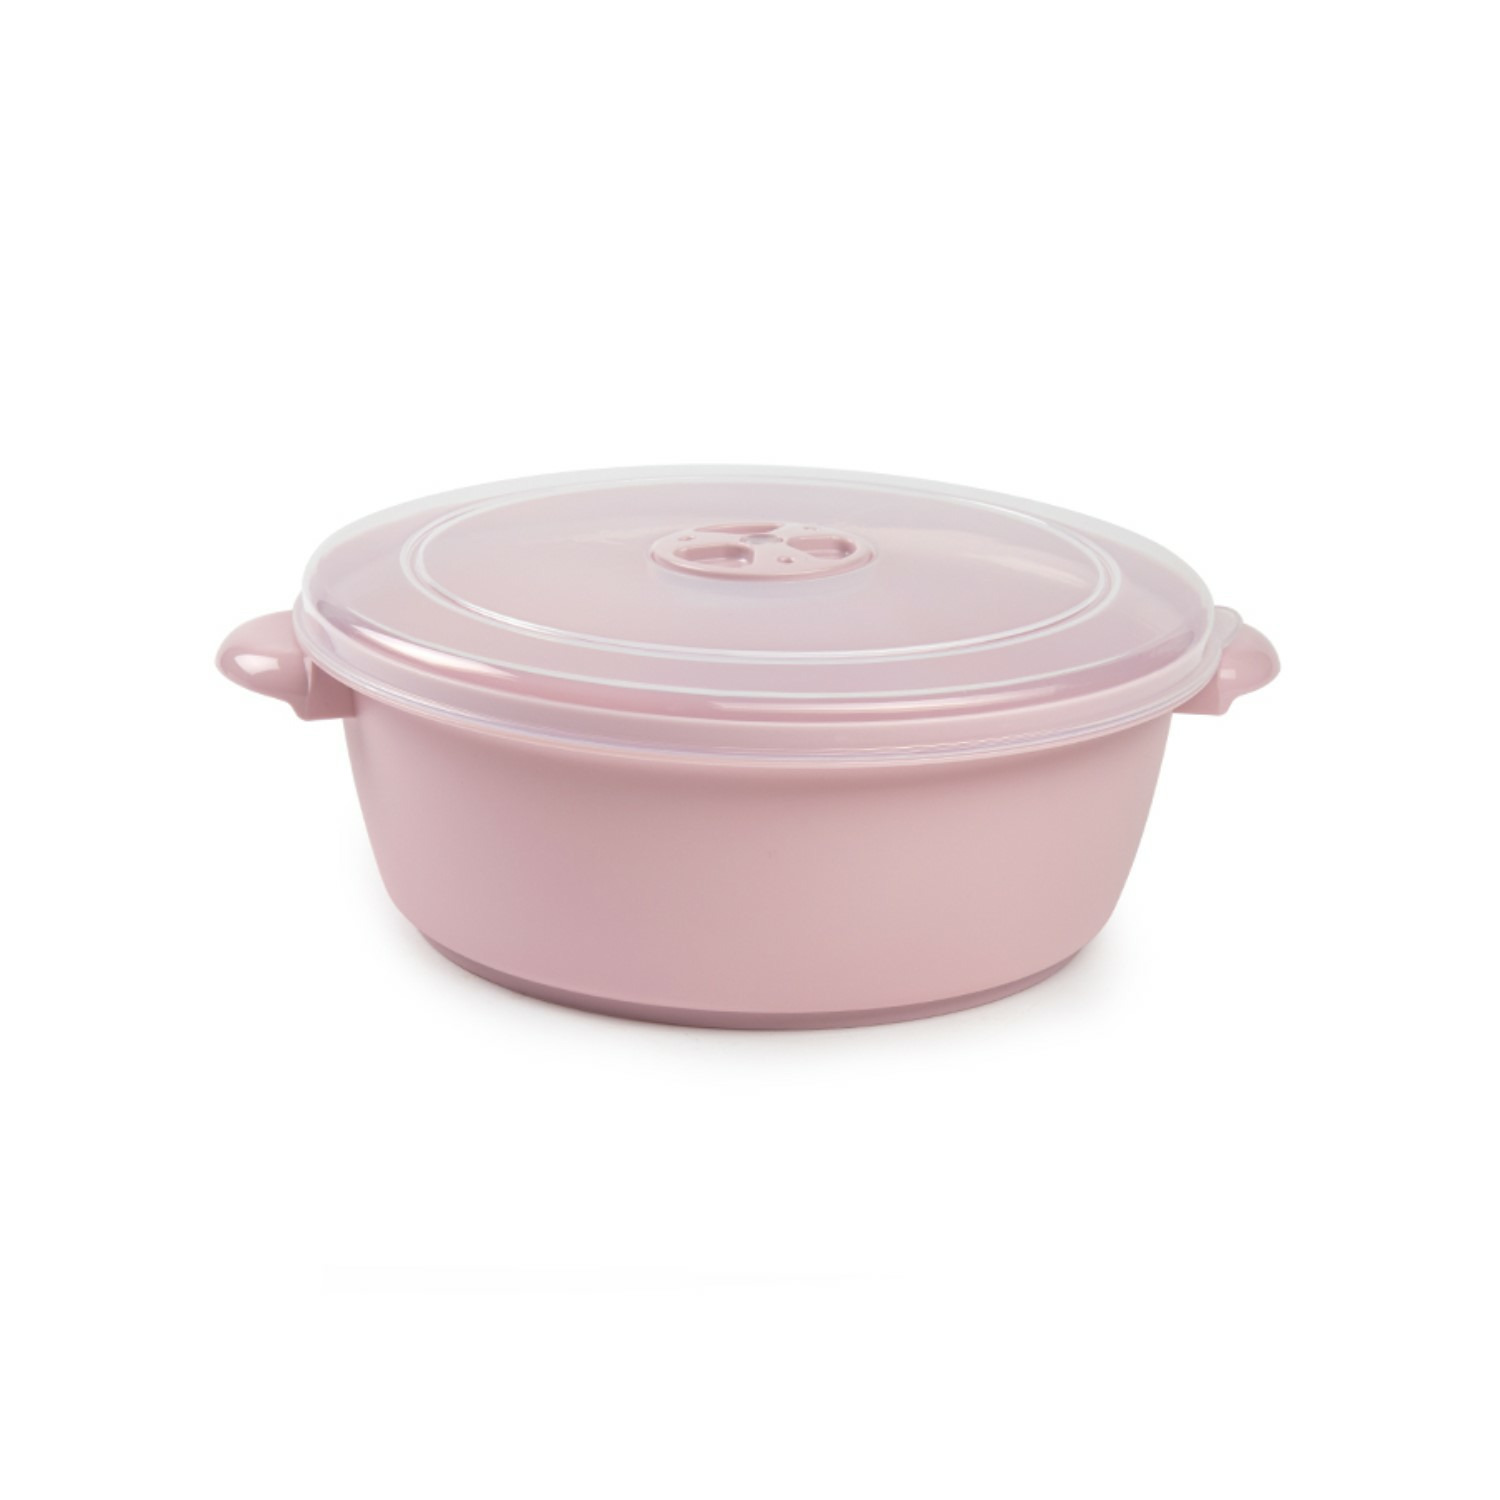 Forte Plastics Magnetronschaal met deksel-ventiel 2 liter roze kunststof BPA vrij keukenhulpmiddelen